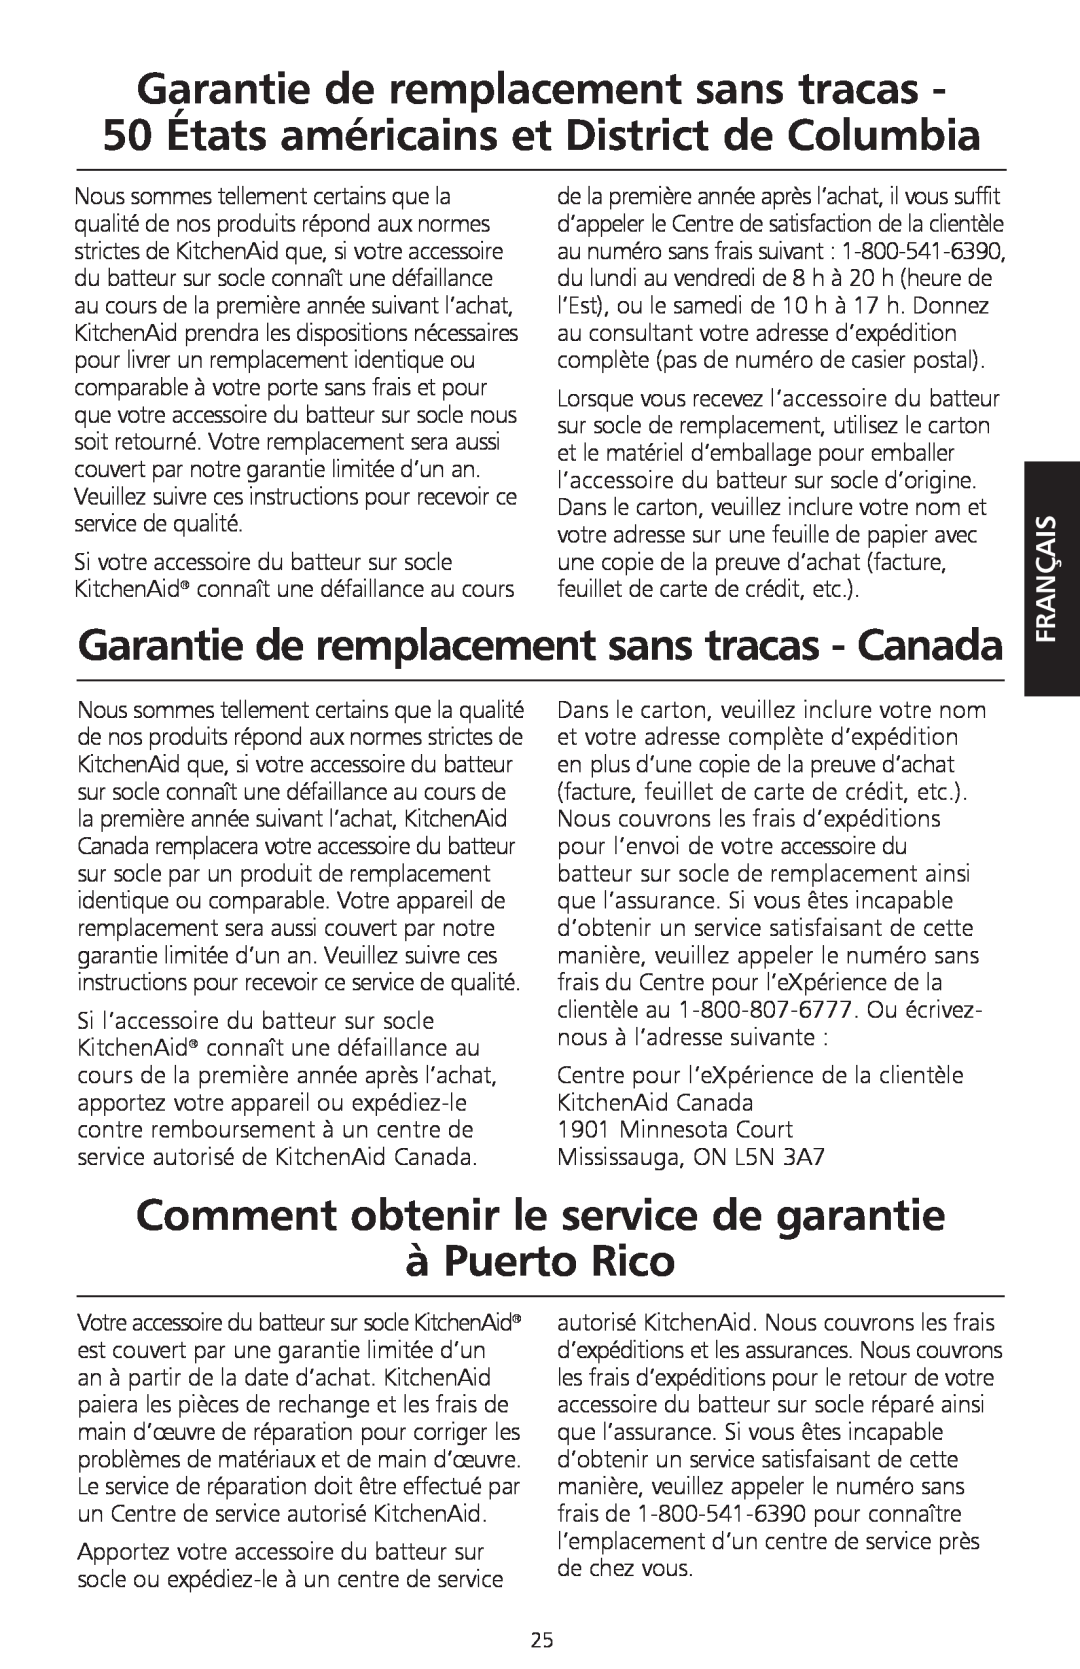 KitchenAid KPEX manual Garantie de remplacement sans tracas - Canada, Comment obtenir le service de garantie à Puerto Rico 